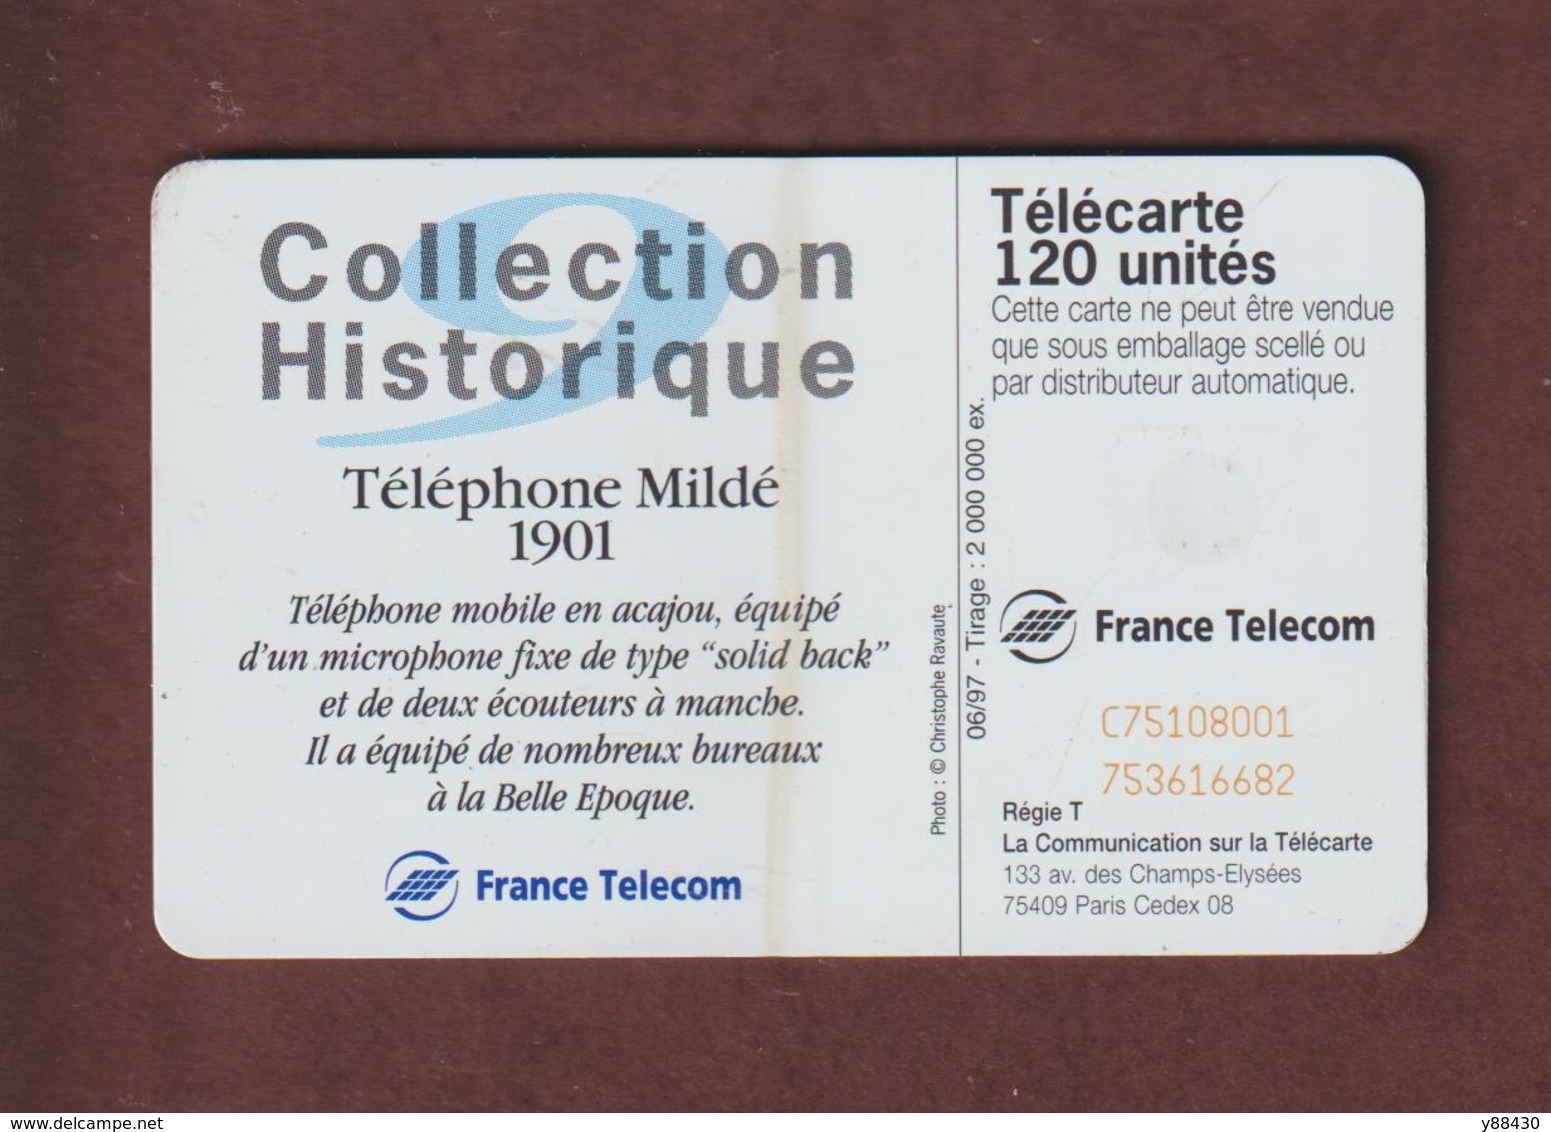 TELECARTE - Carte Téléphonique De 120 Unités - Téléphone Mildé 1901  - 2 Scannes. - 120 Einheiten